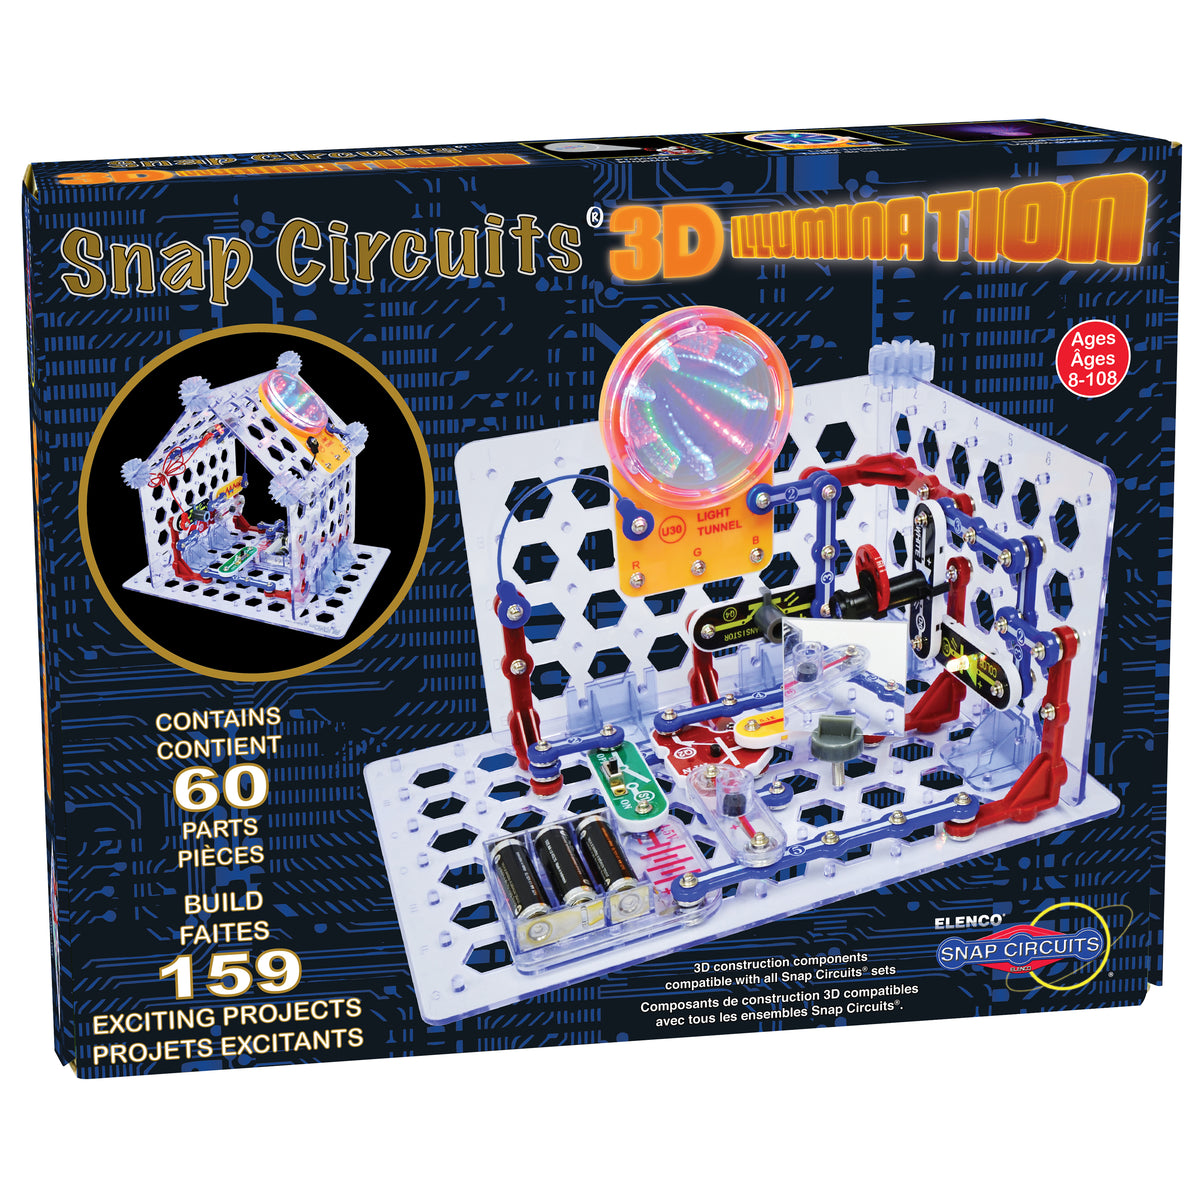 Snap Circuits 3D Illumination SC3Di – The Robot Garage Inc.